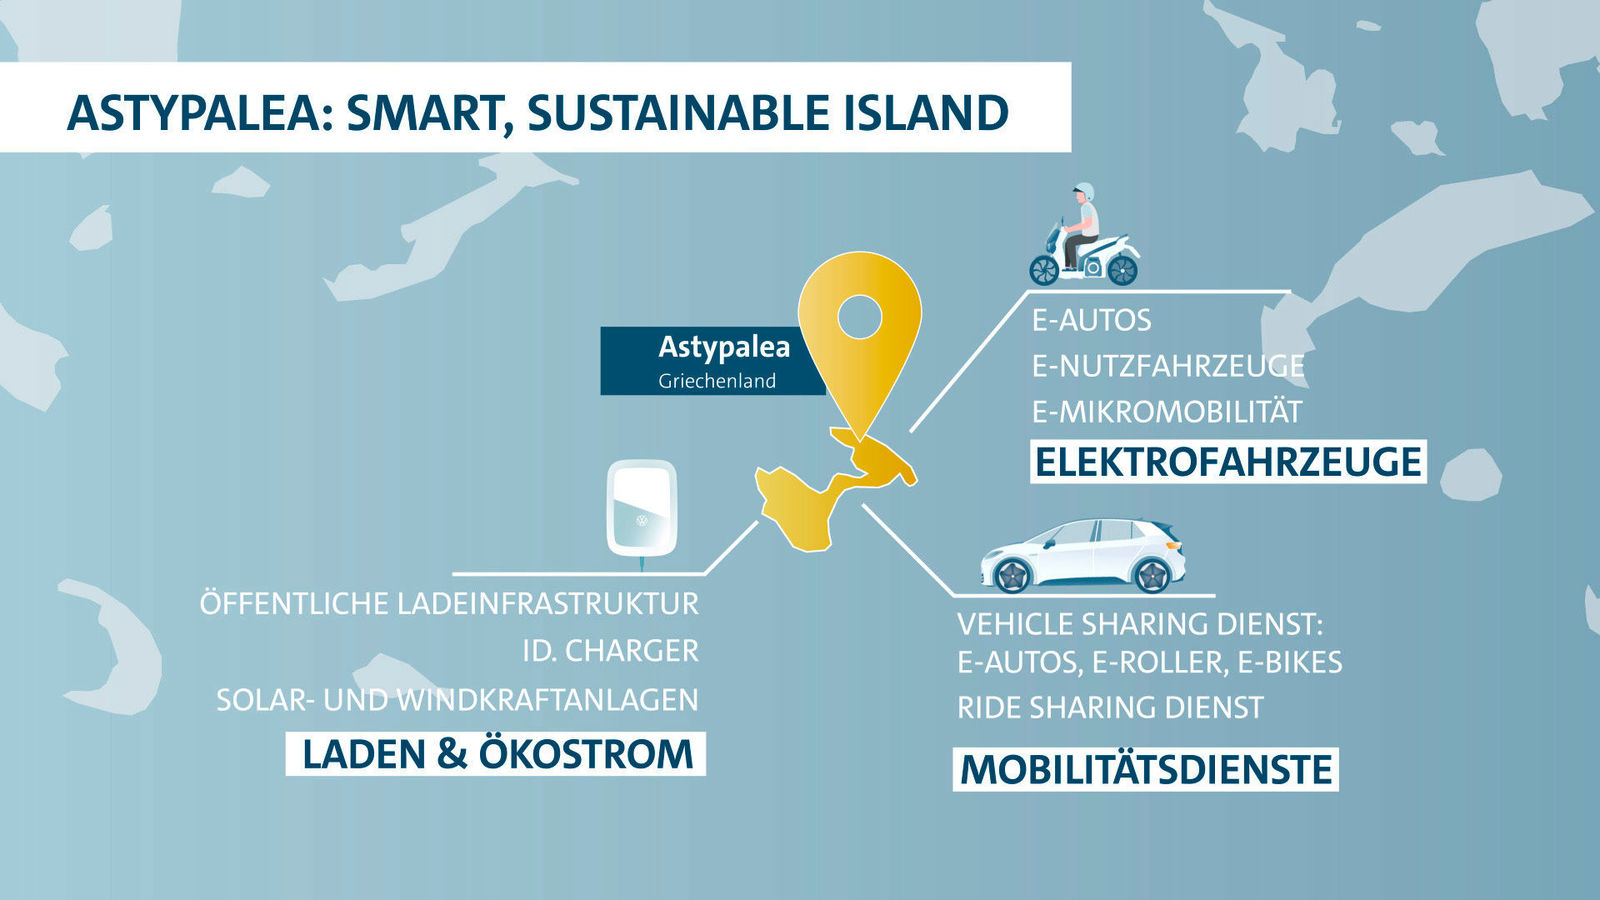 Volkswagen Konzern und Griechenland wollen Modellinsel für klimaneutrale Mobilität schaffen